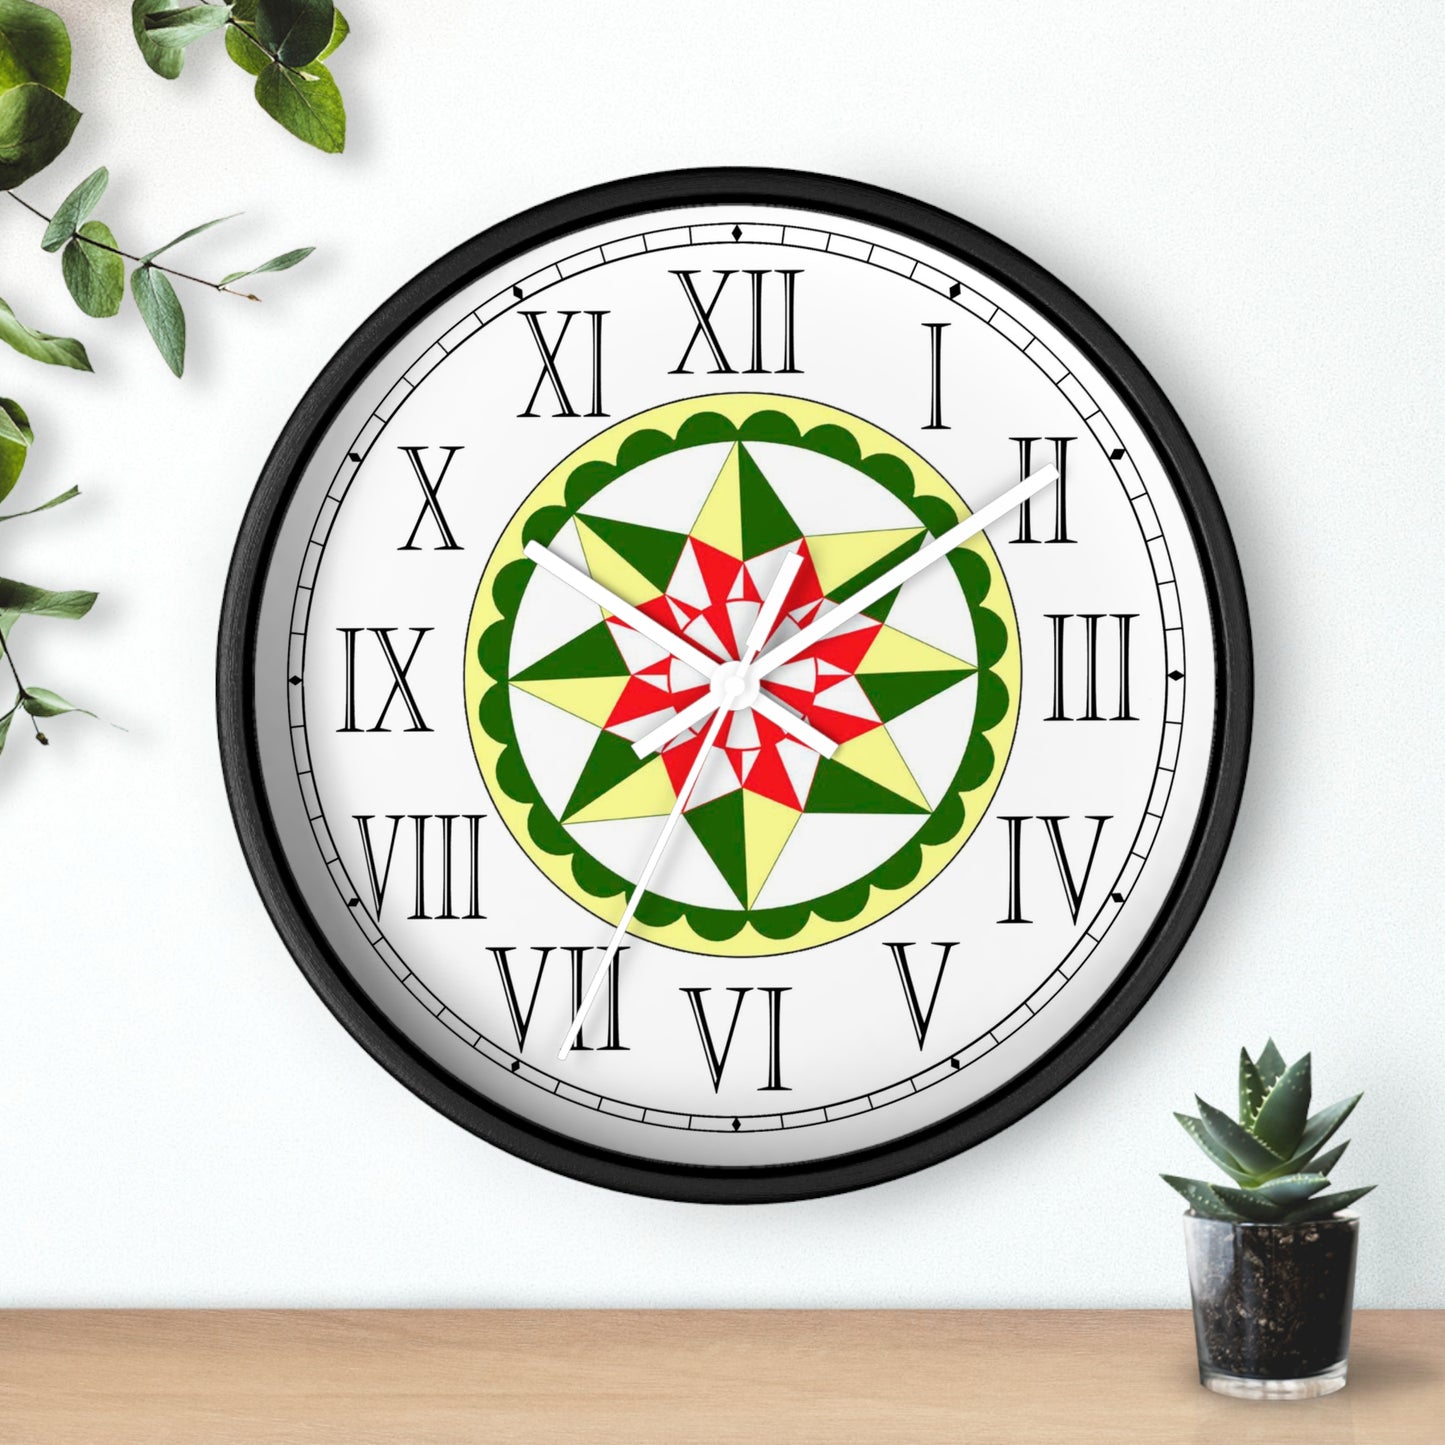 Morning Star Folk Art Design Roman Numeral Clock